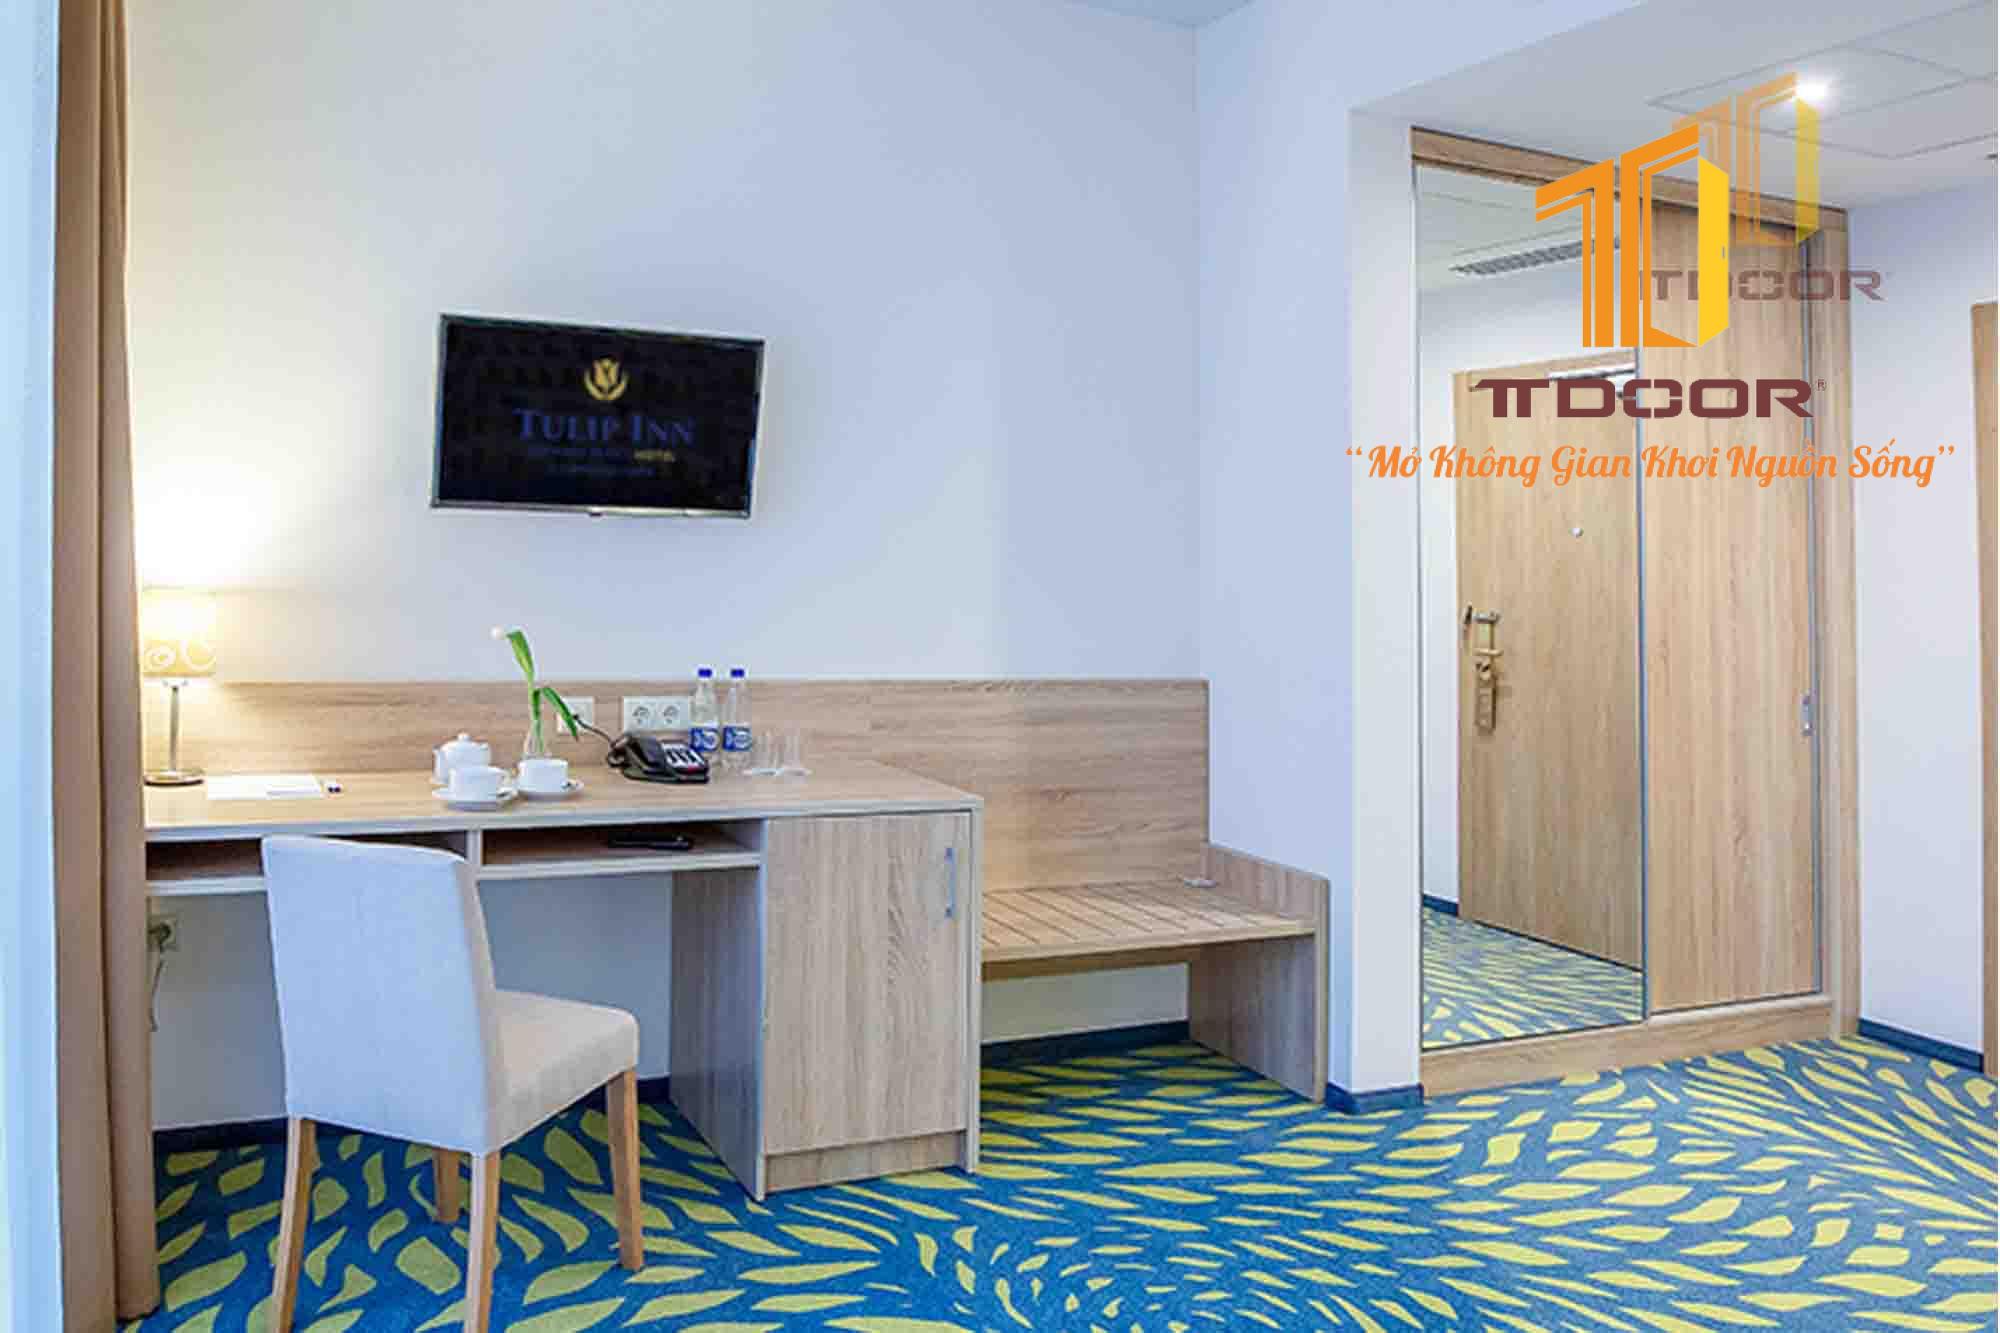 Cửa gỗ có màu sắc tương đồng với phong cách thiết kế của khách sạn